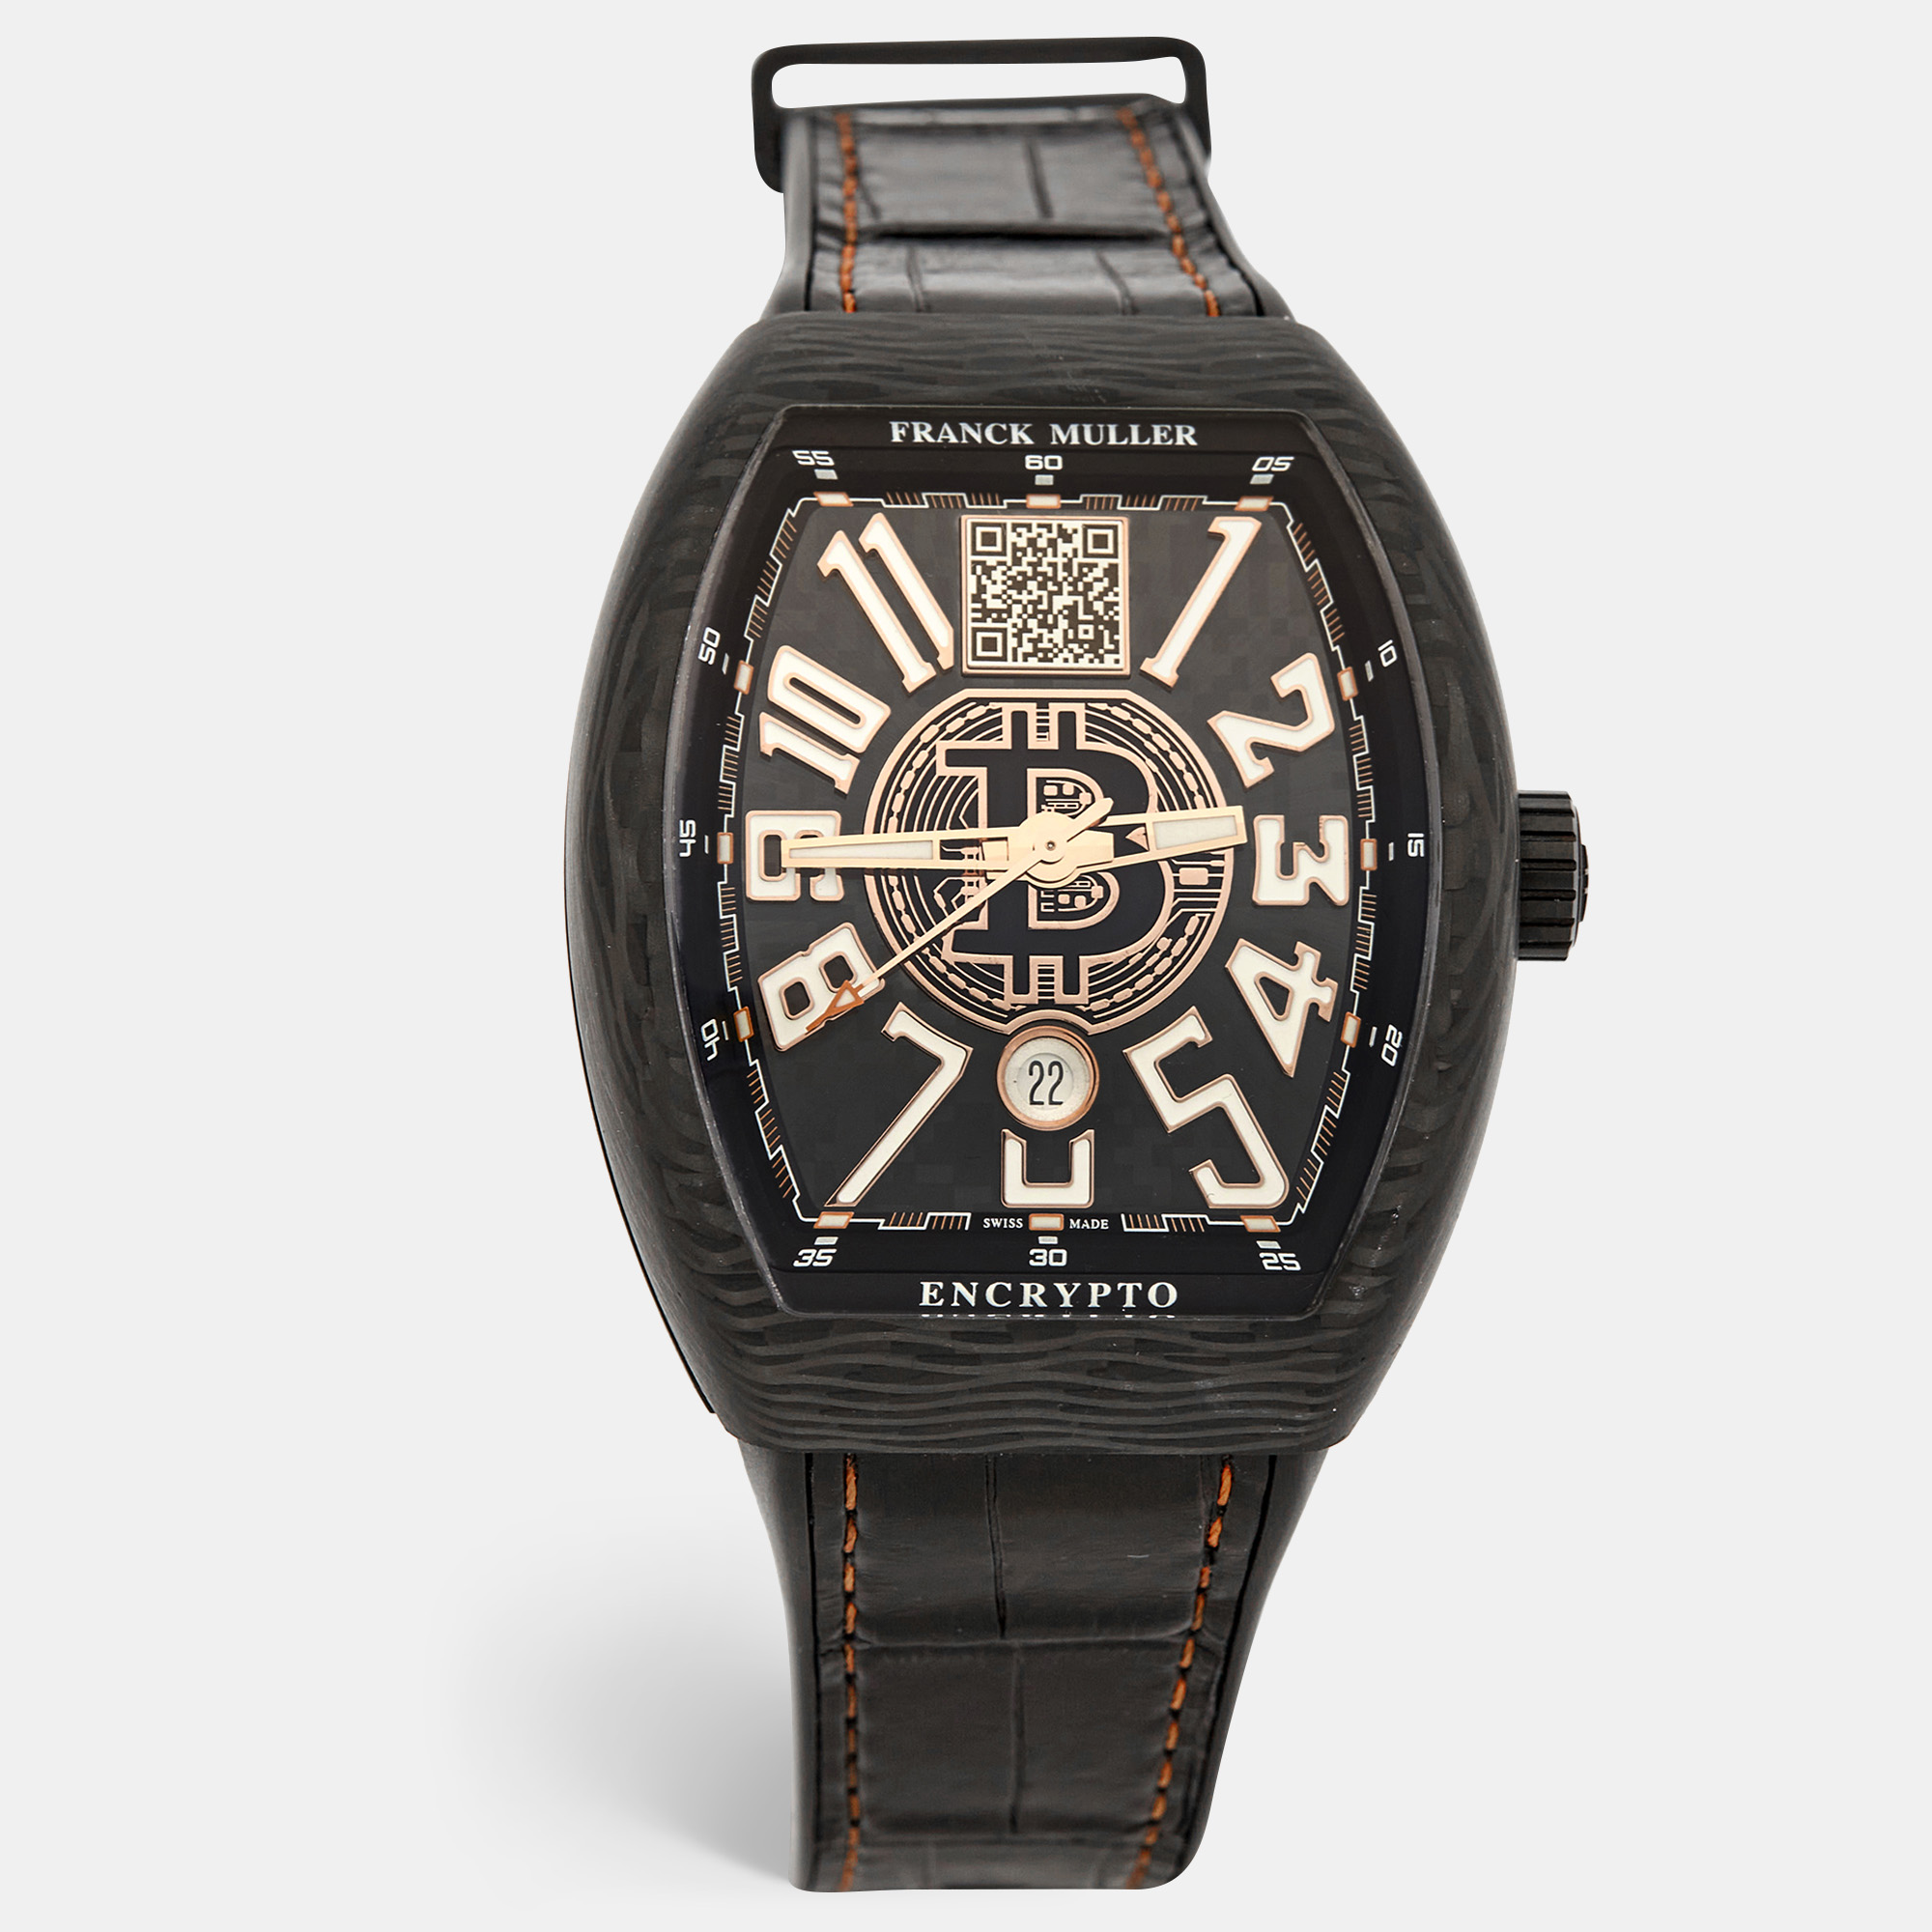 Franck muller black carbon alligator vanguard encrypto v45svdtbtc men's wristwatch 45 mm